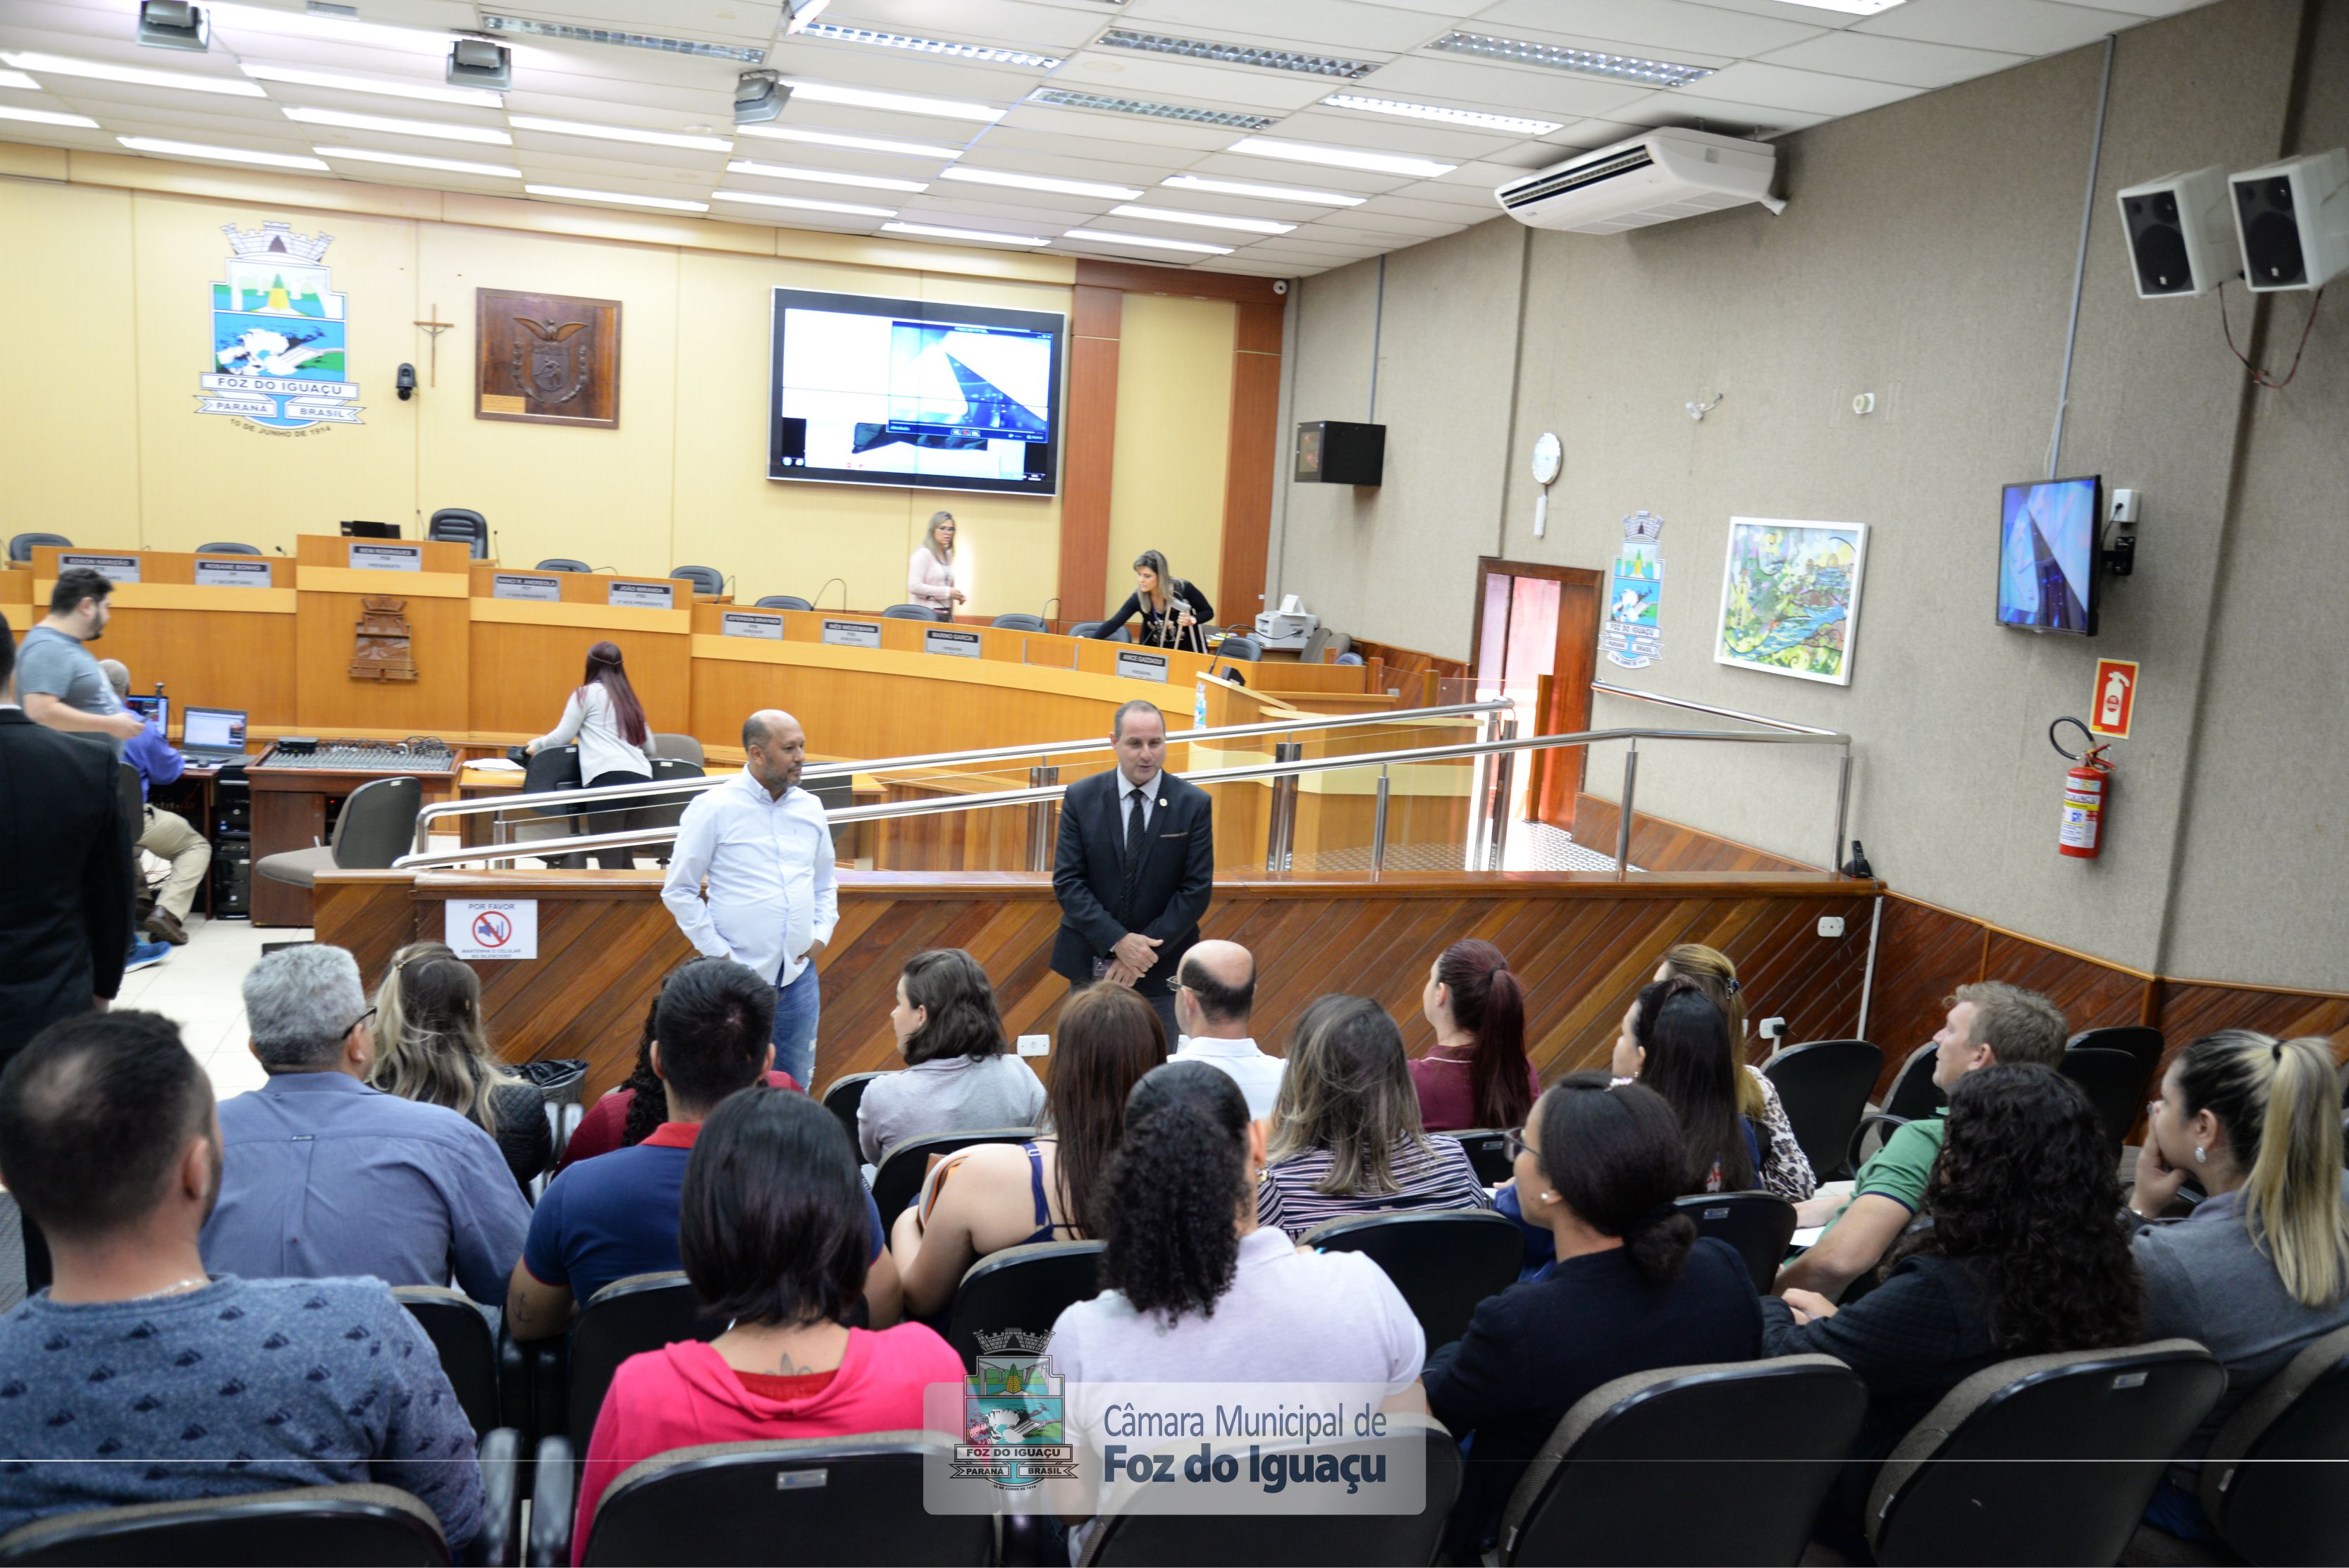 Alunos do curso técnico em Administração do Instituto Federal do Paraná visitam a Câmara Municipal de Foz do Iguaçu - 08-08 (05)